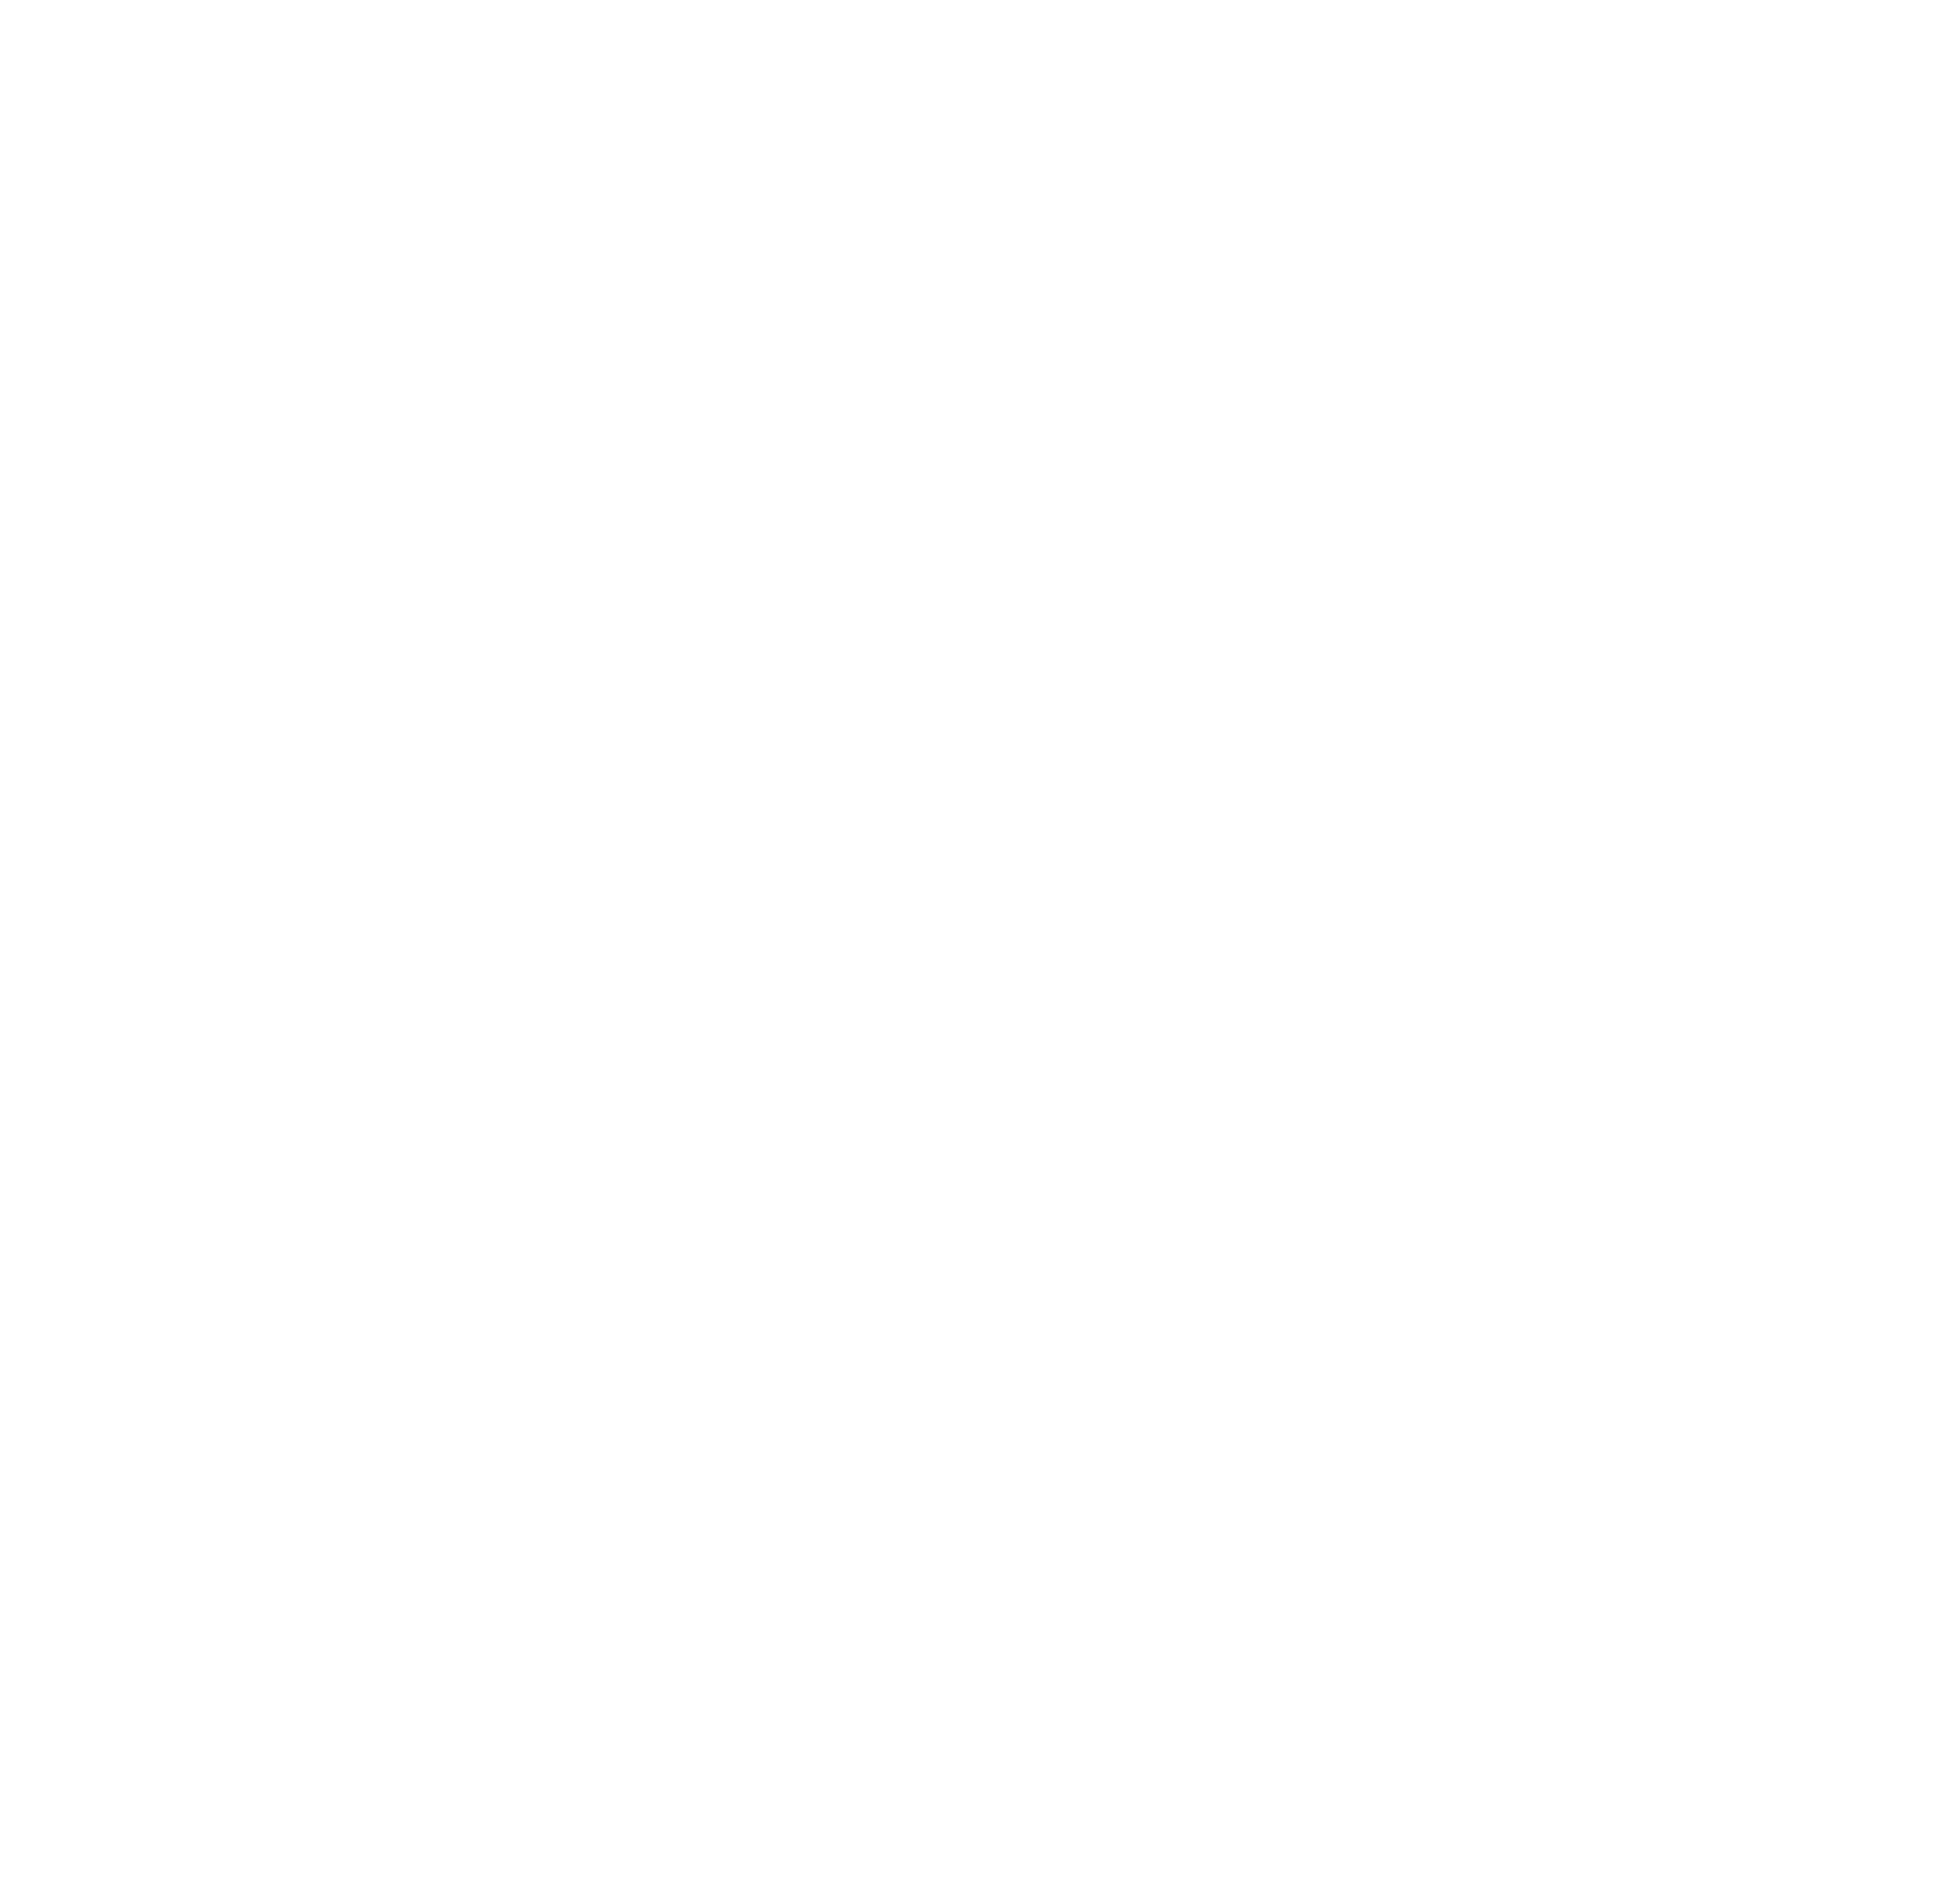 Daredevil Records - Partner